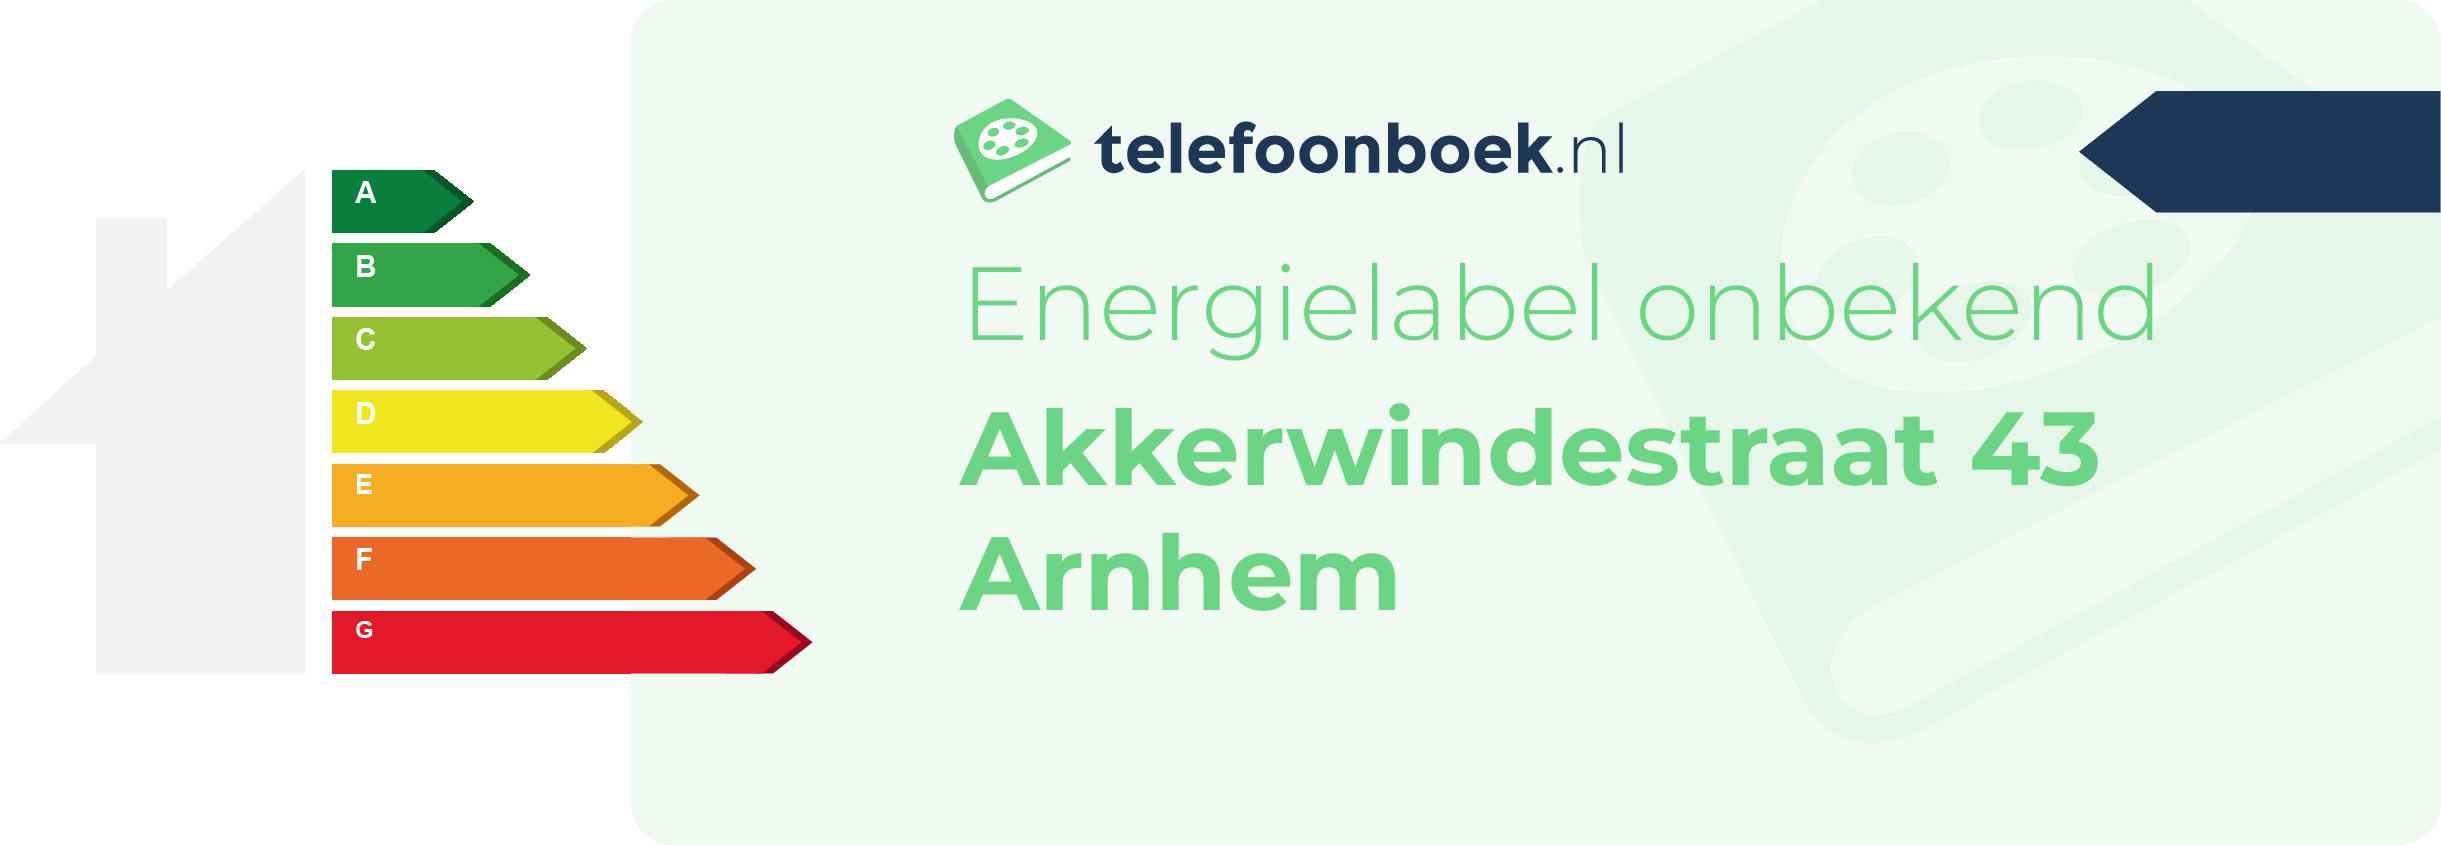 Energielabel Akkerwindestraat 43 Arnhem